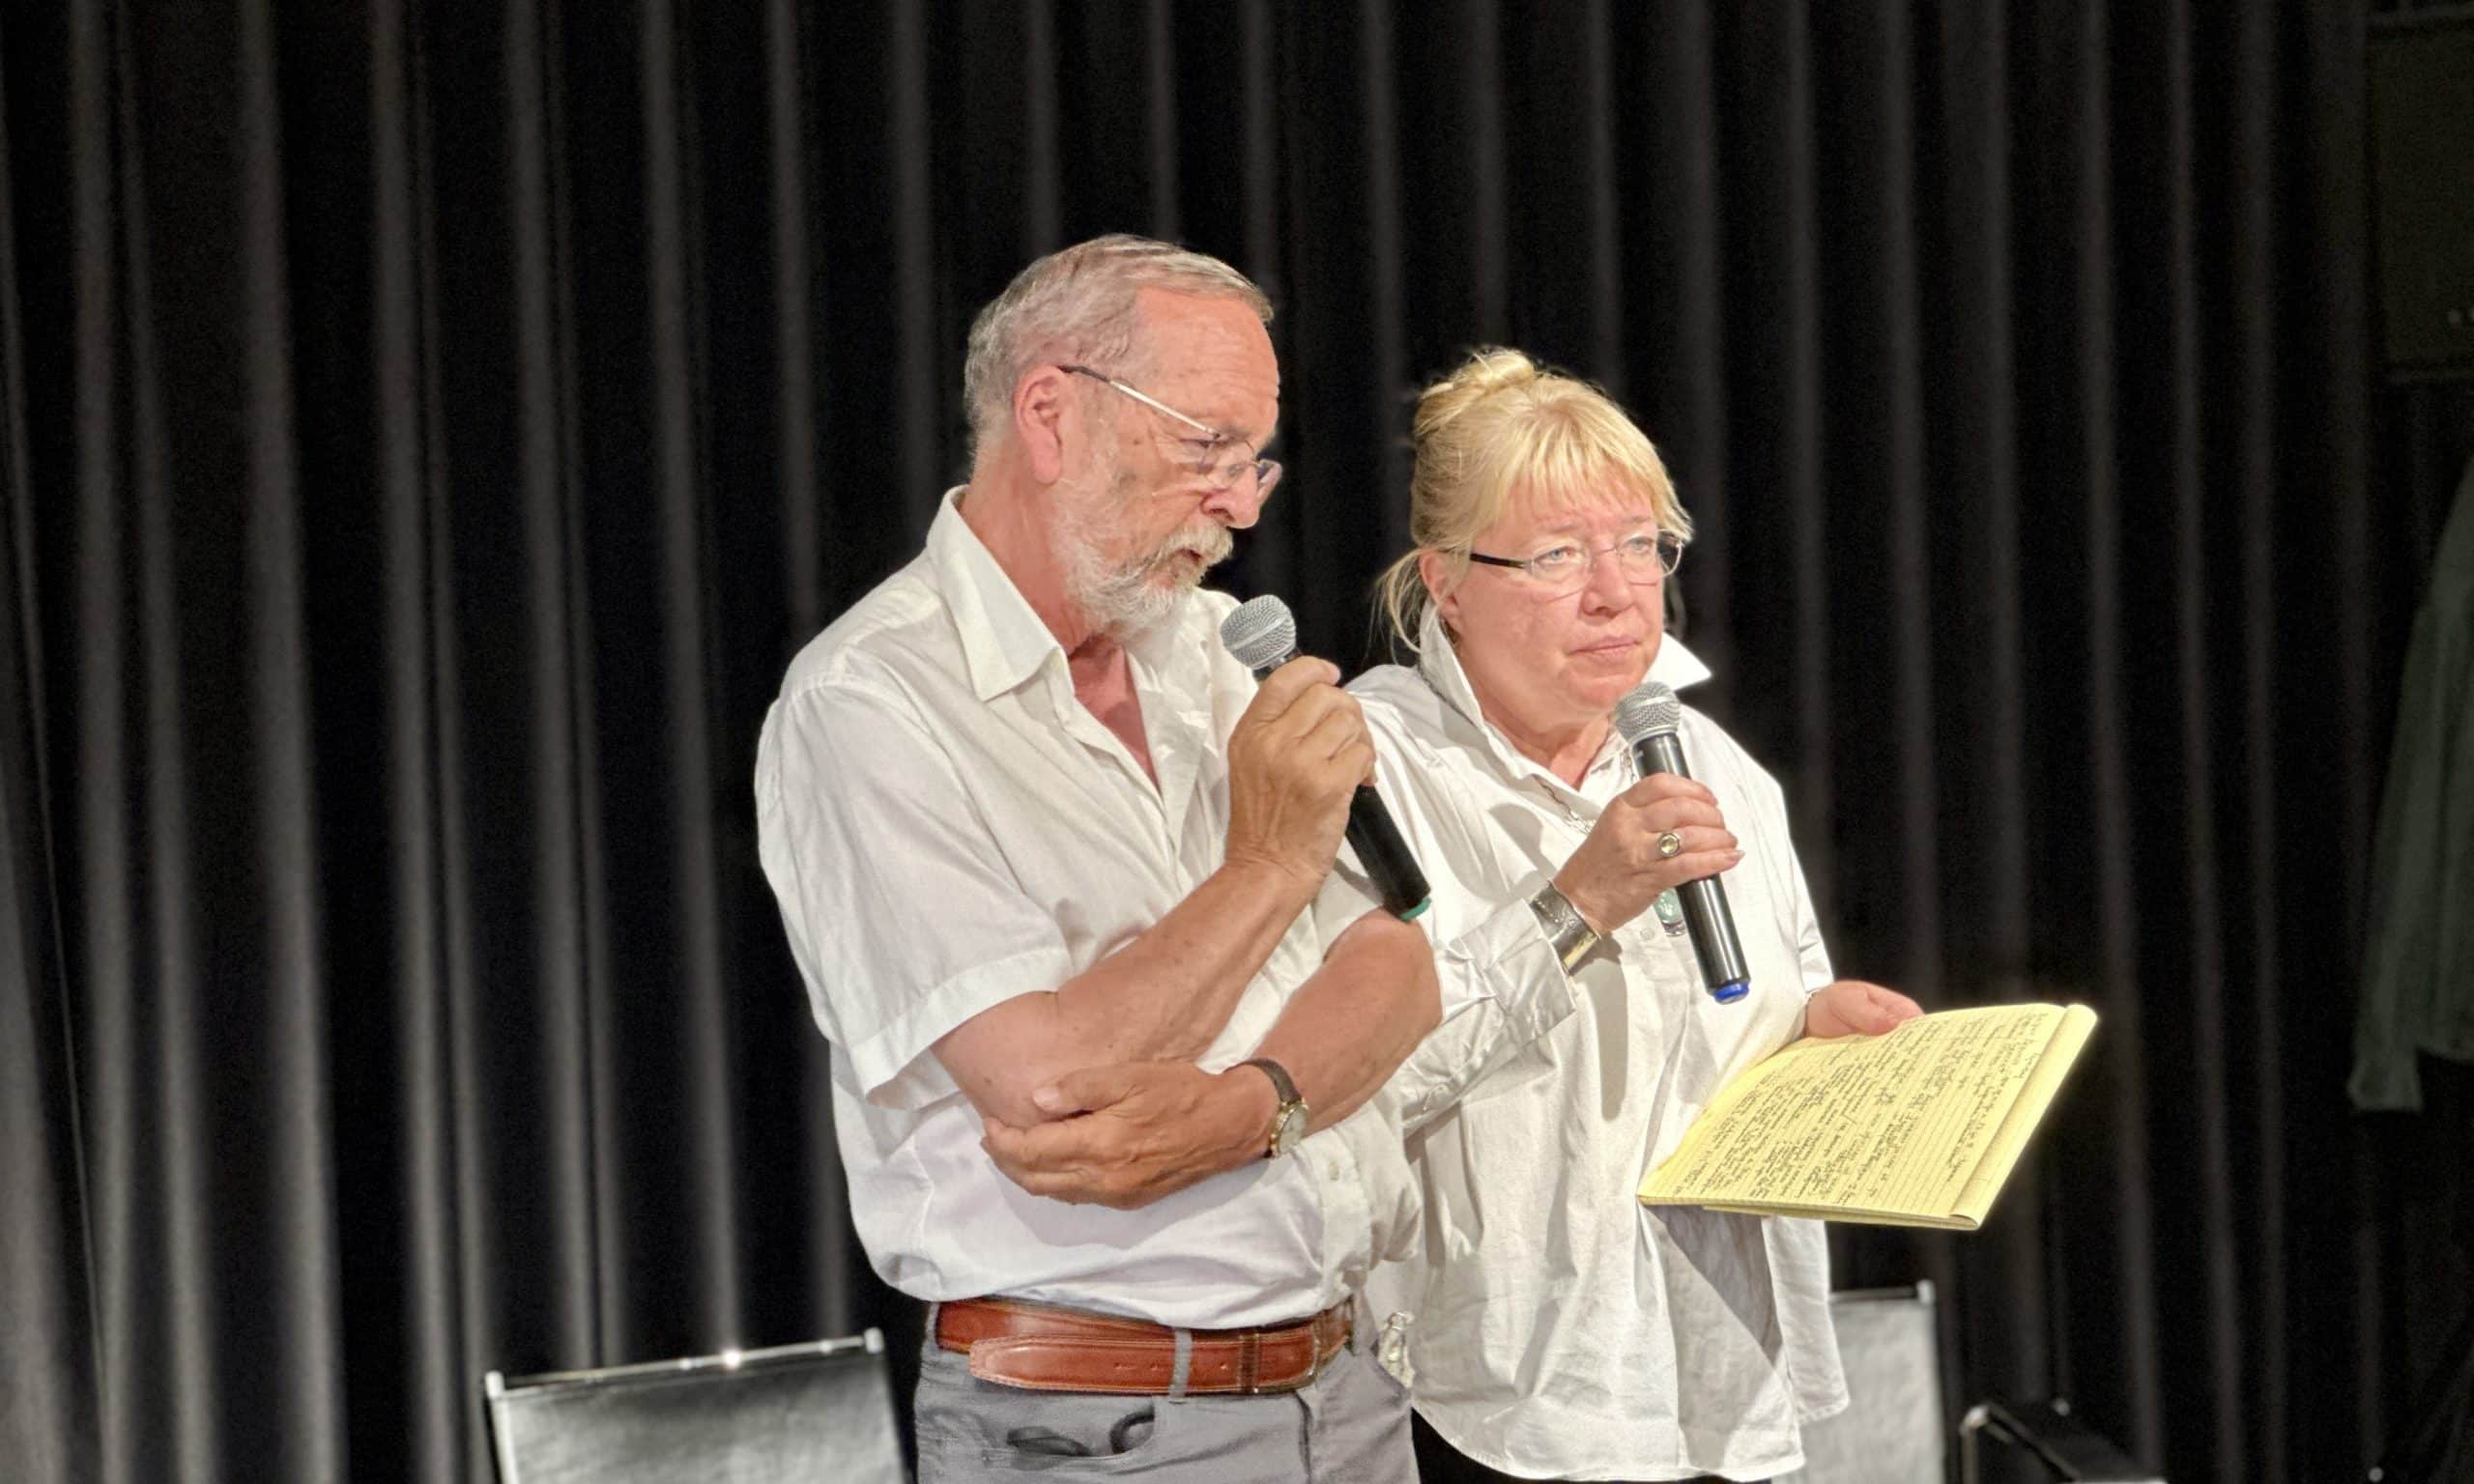 Патрик Серио и Елена Жемкова на учреждении НКО Memorial-Suisse. Берн, 17 июня 2023 г. (© schwingen.net)